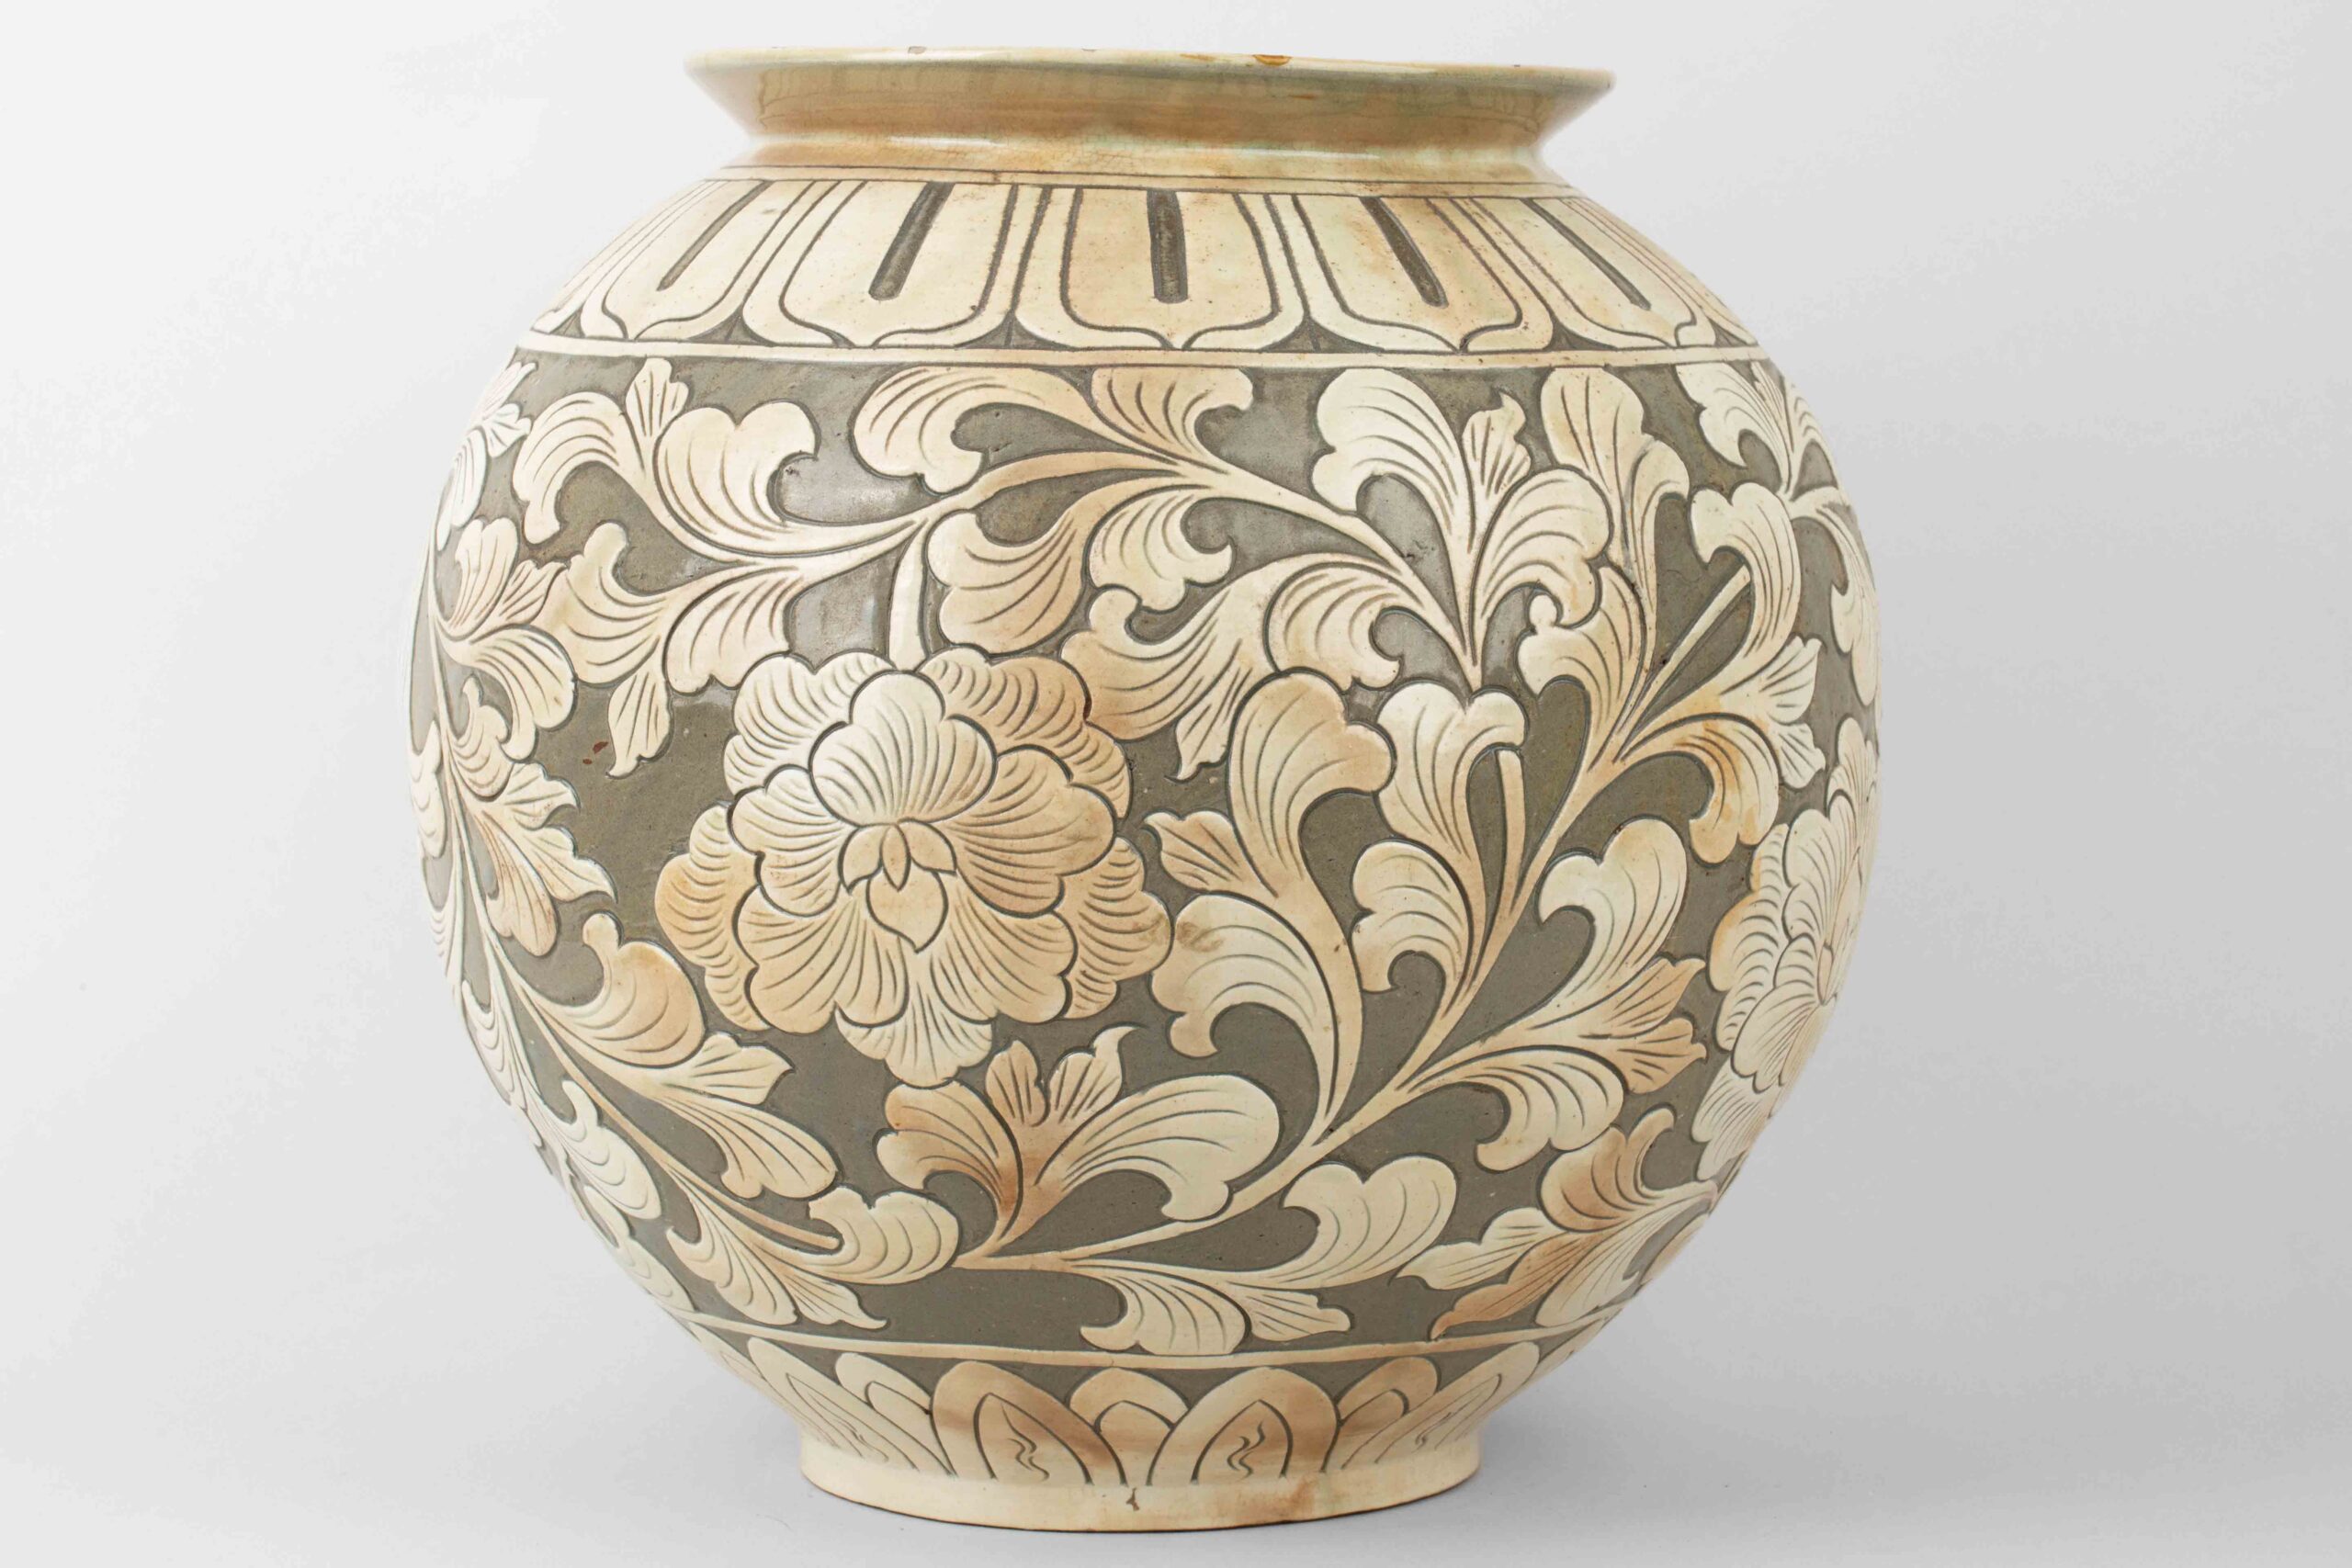 Yaozhou kiln carved jar, 19th century耀州窑刻花纹罐二十世纪– Time 